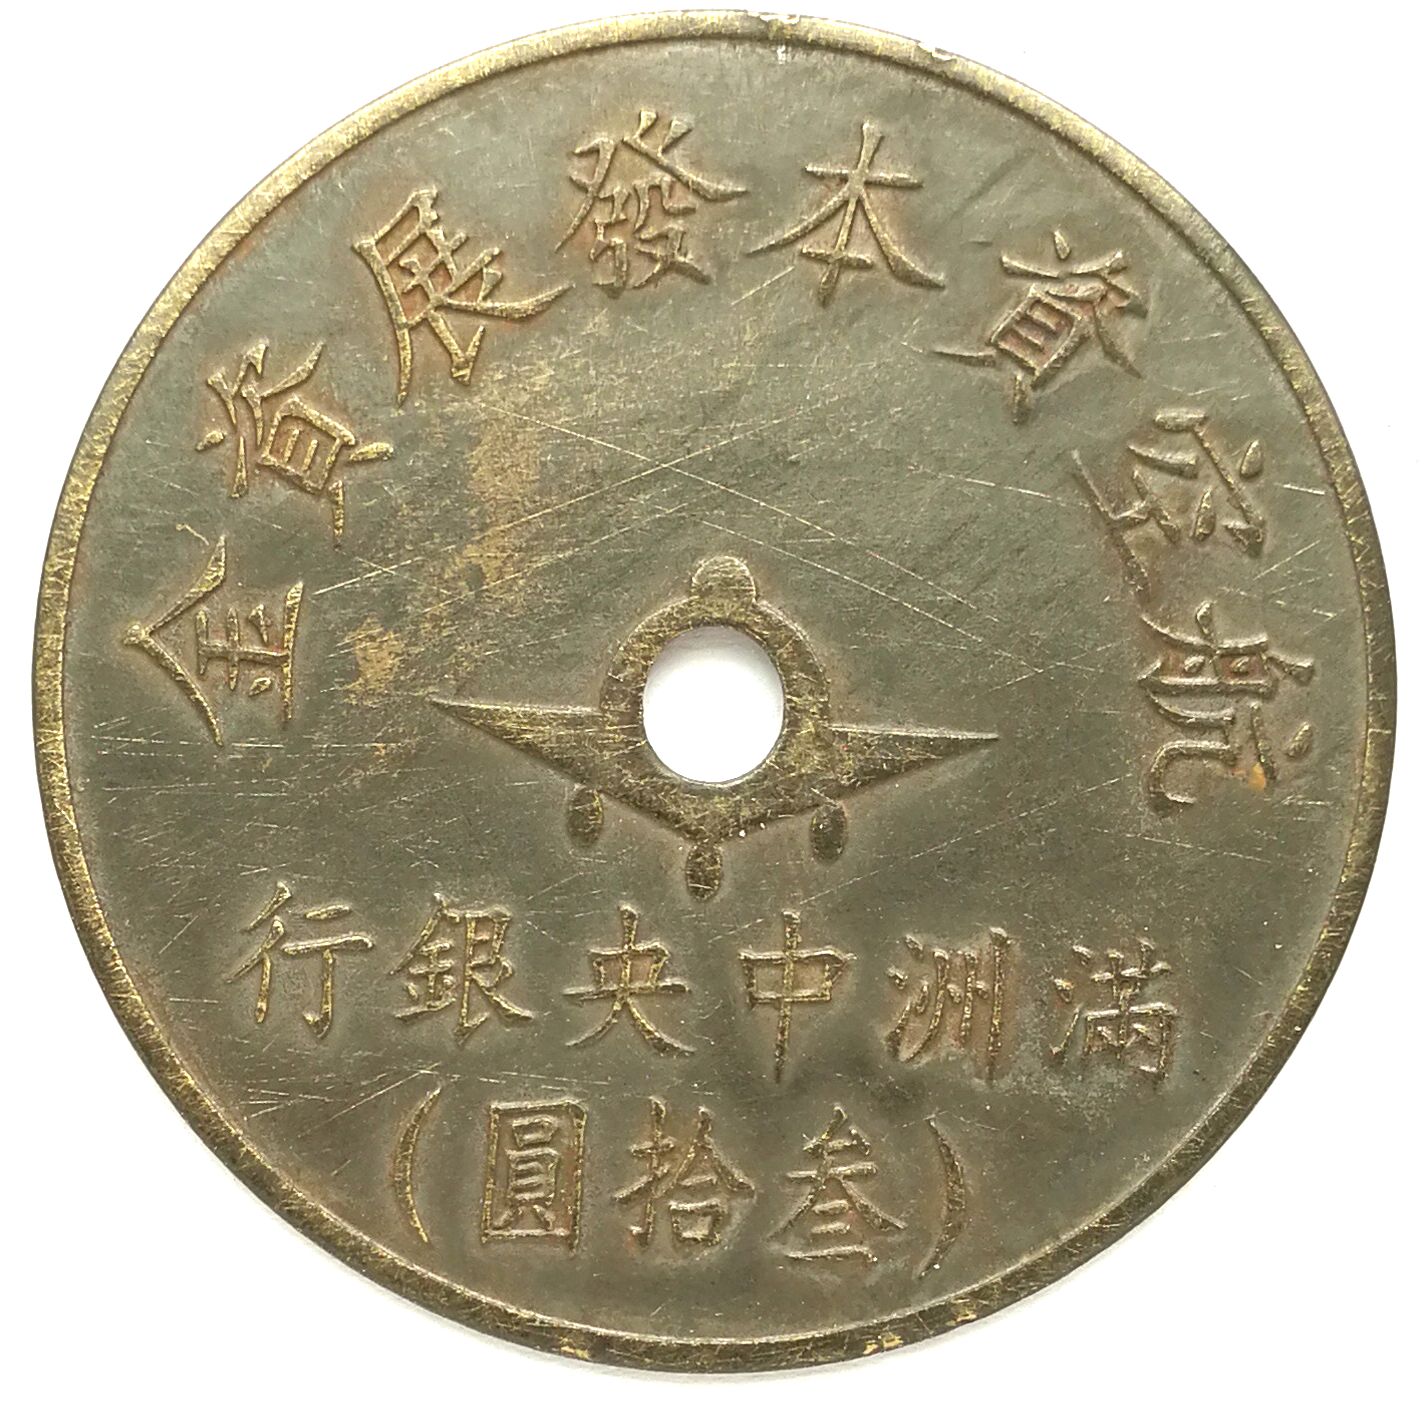 BT521, Manchukuo Aviation Development Fund, Central Bank 30 Yen Token, 1945